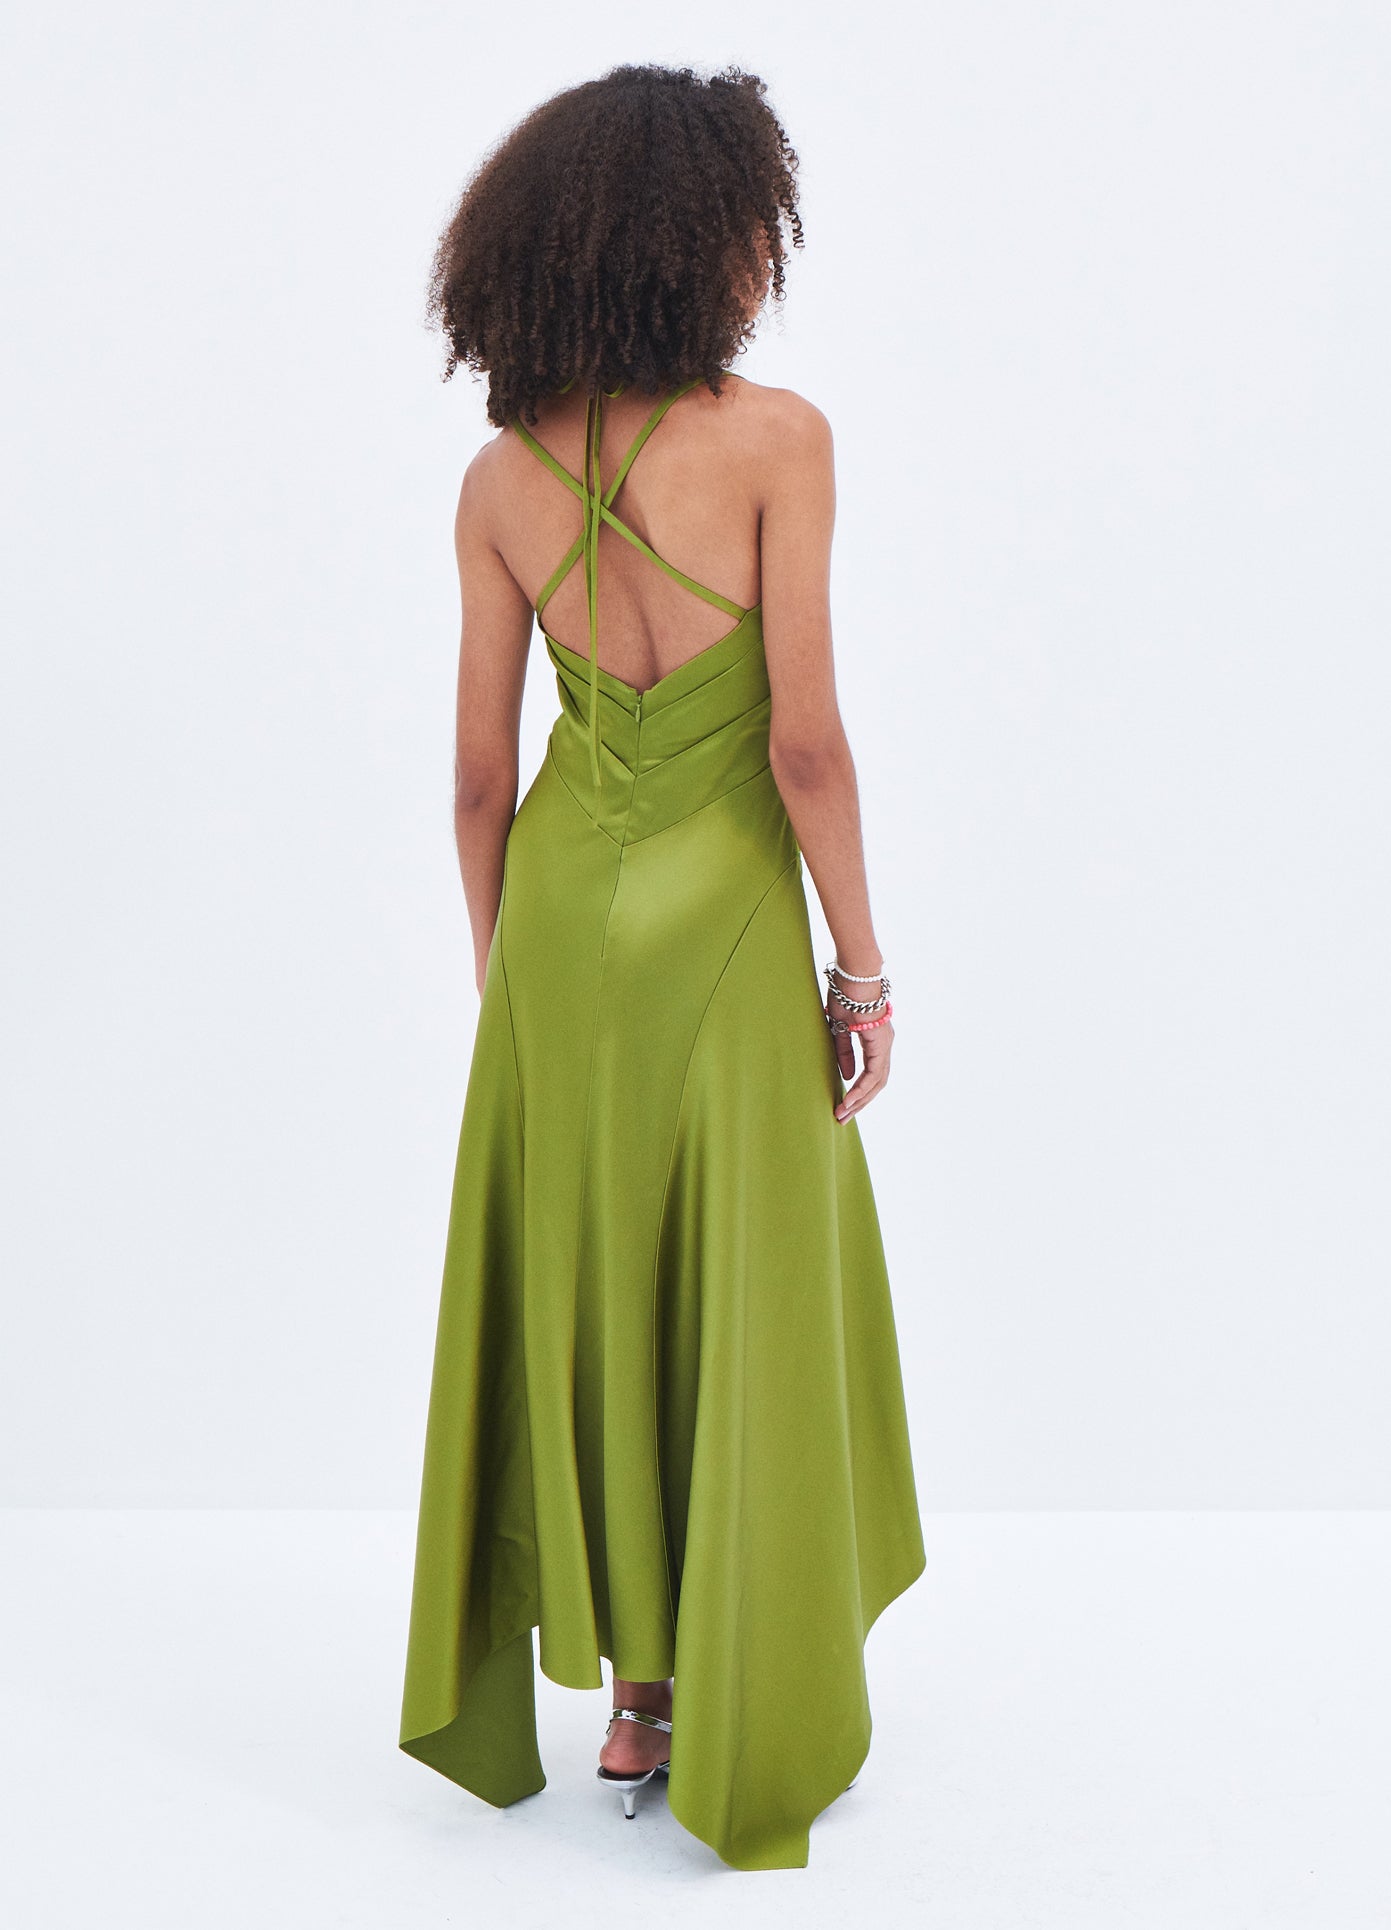 MONSE Satin Draped Slip Dress in Olive on model full back view